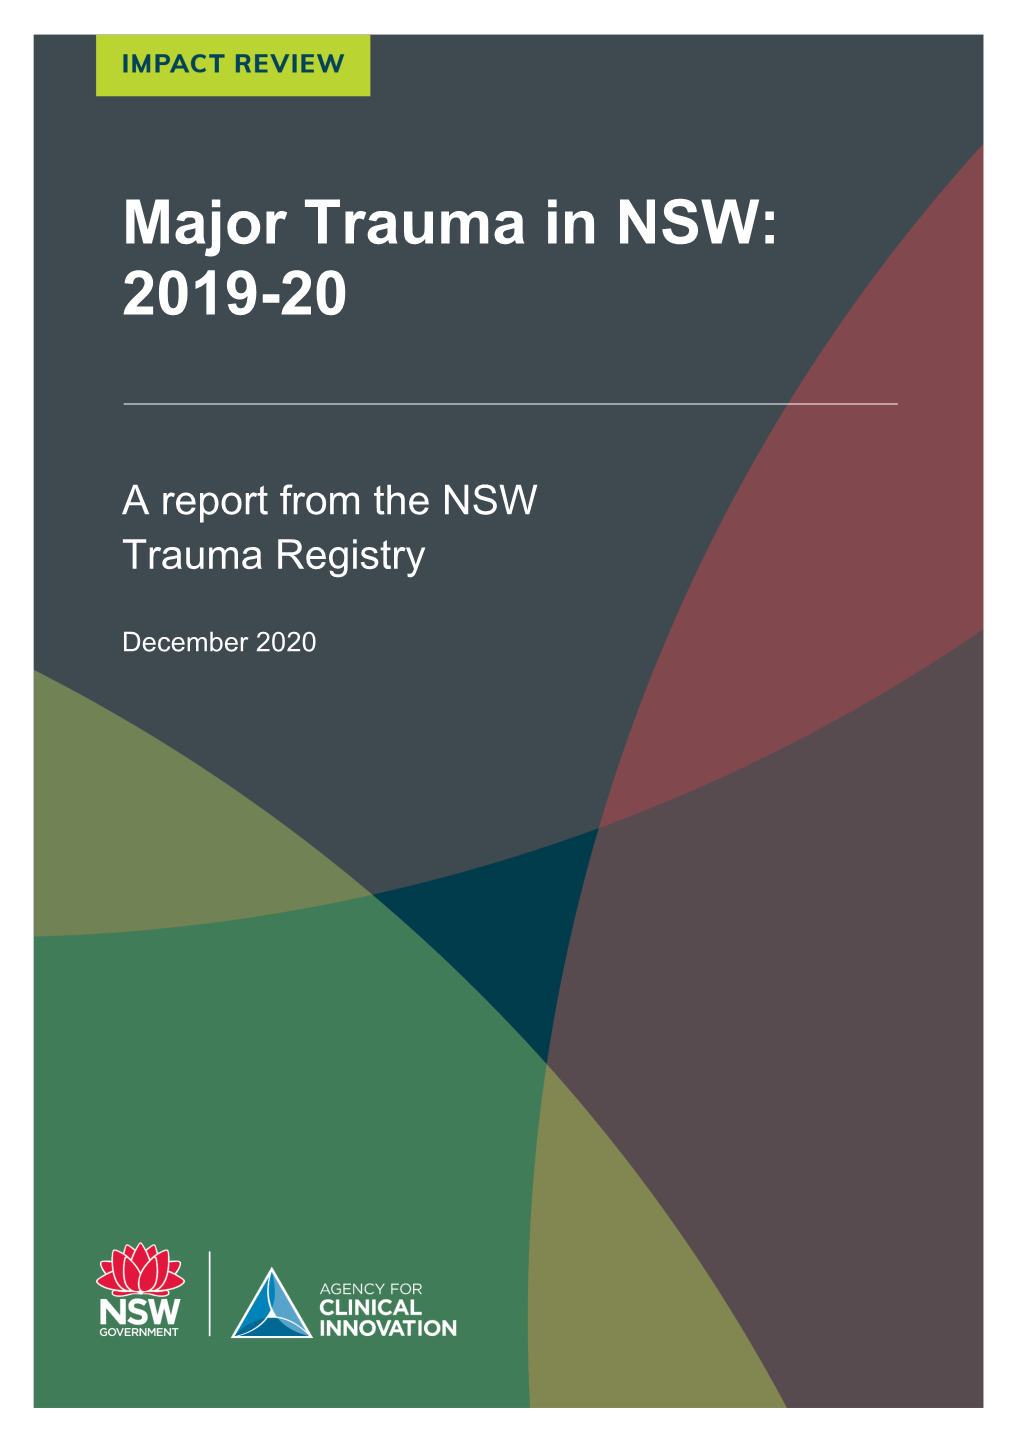 Major Trauma in NSW, 2019-20